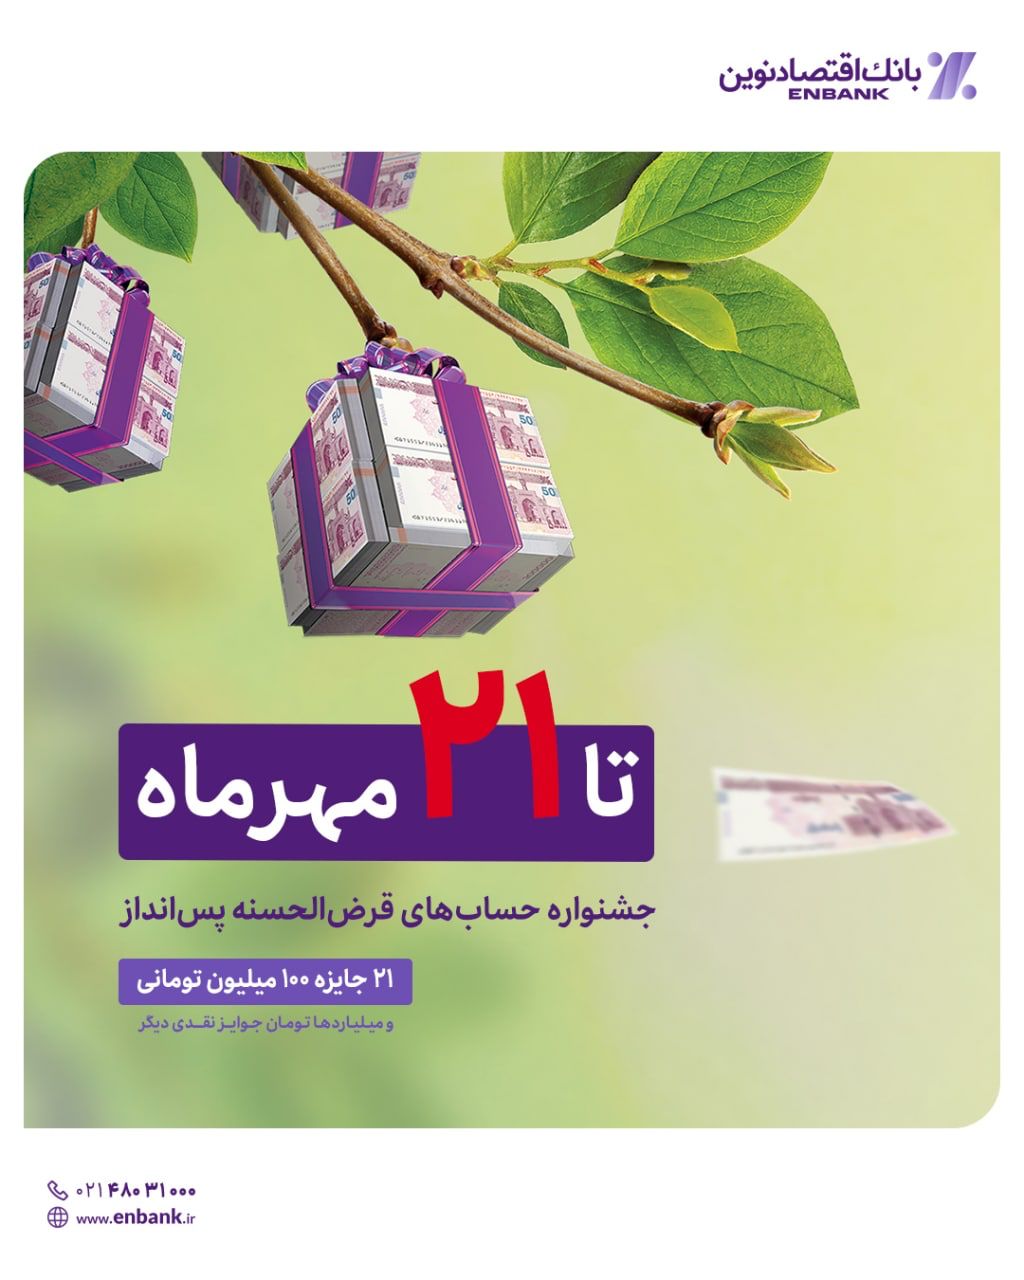 ۲۱ مهرماه؛ آخرین مهلت بهره مندی از جوایز دهمین جشنواره قرض الحسنه بانک اقتصادنوین